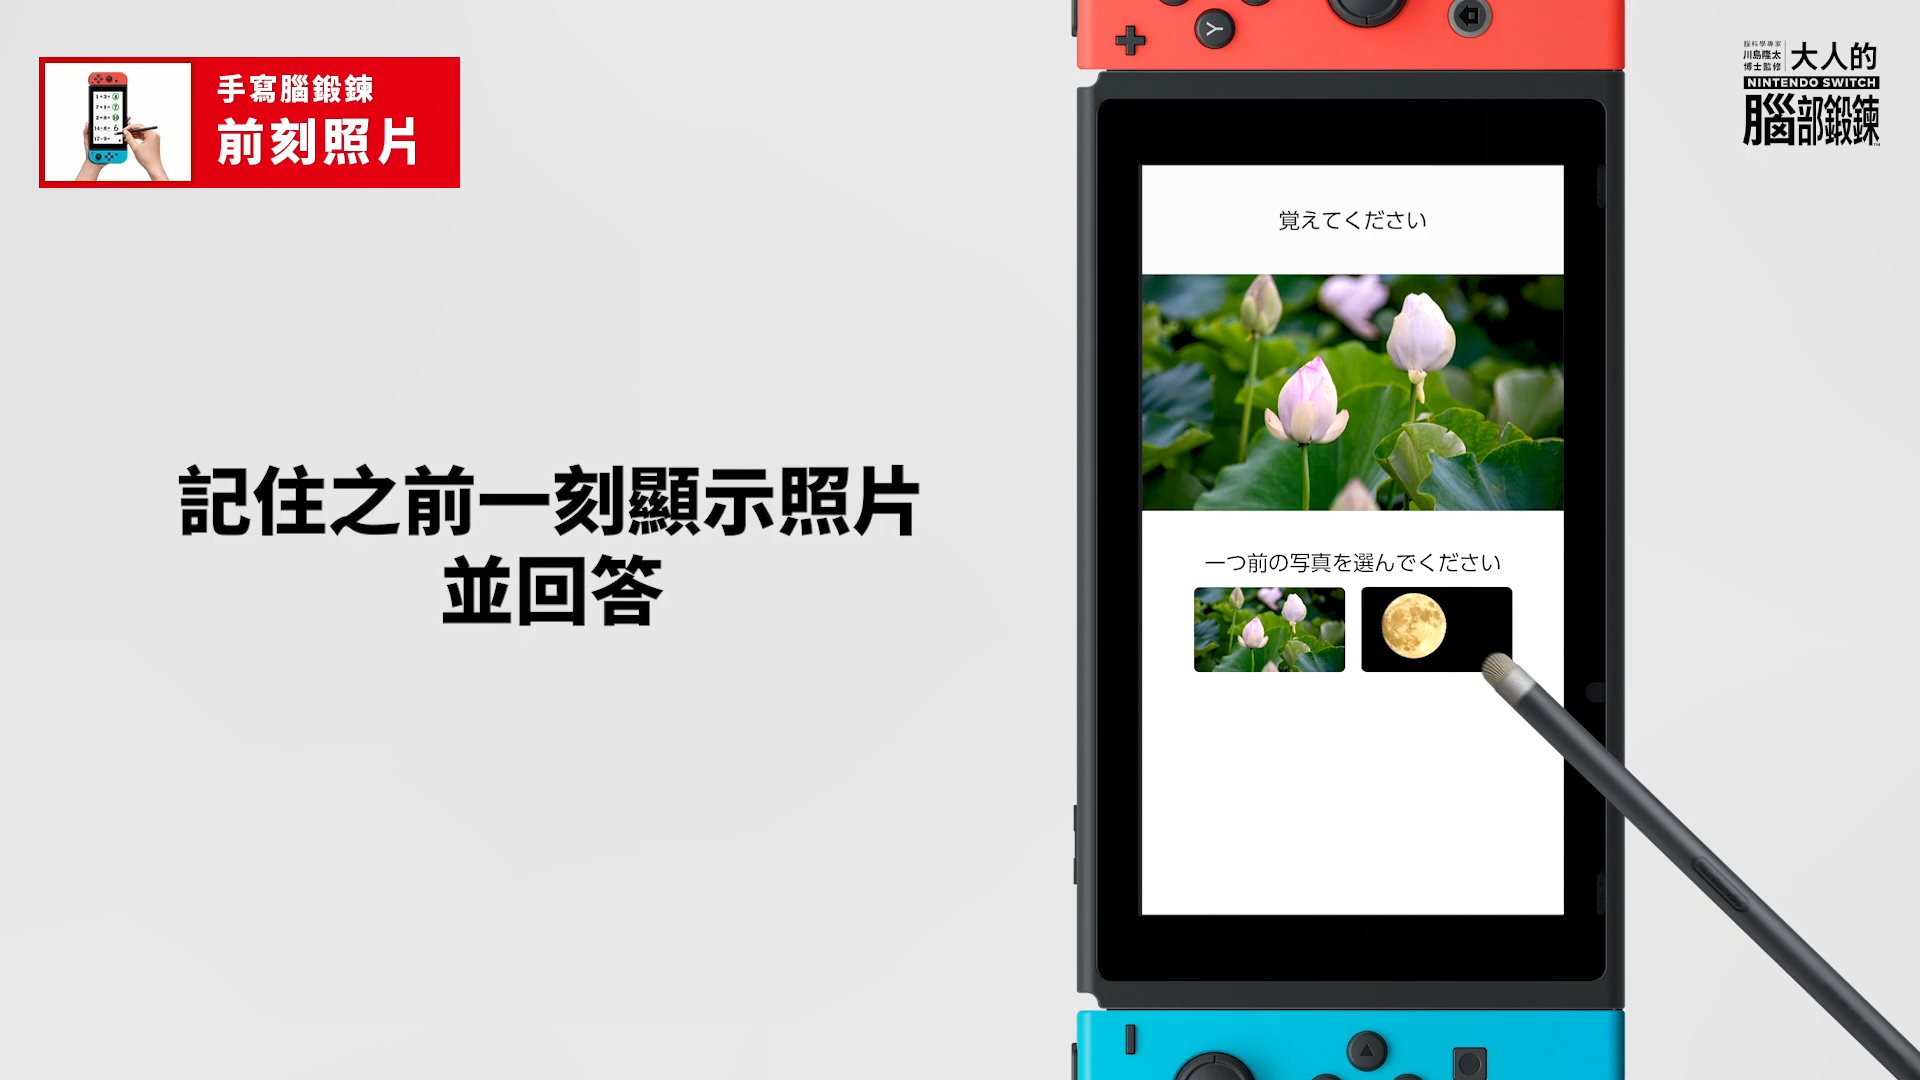 Switch《脑锻炼》中文版宣传片 中文官网已上线